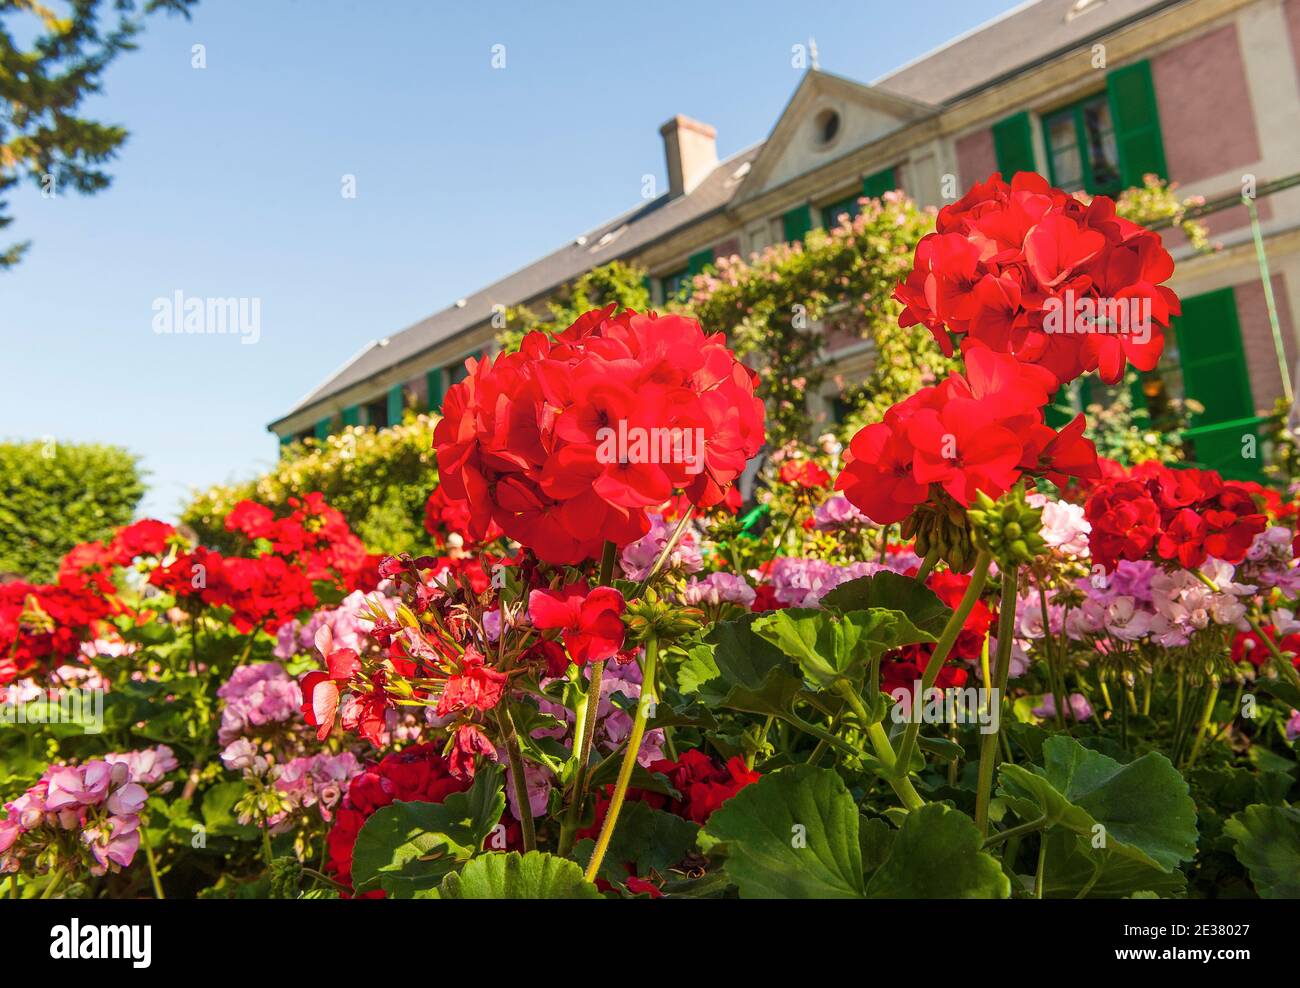 La casa del famoso pittore francese Claude Monat a Giverny è circondata da gerani e altri fiori, con la facciata coperta di edera; Francia Foto Stock